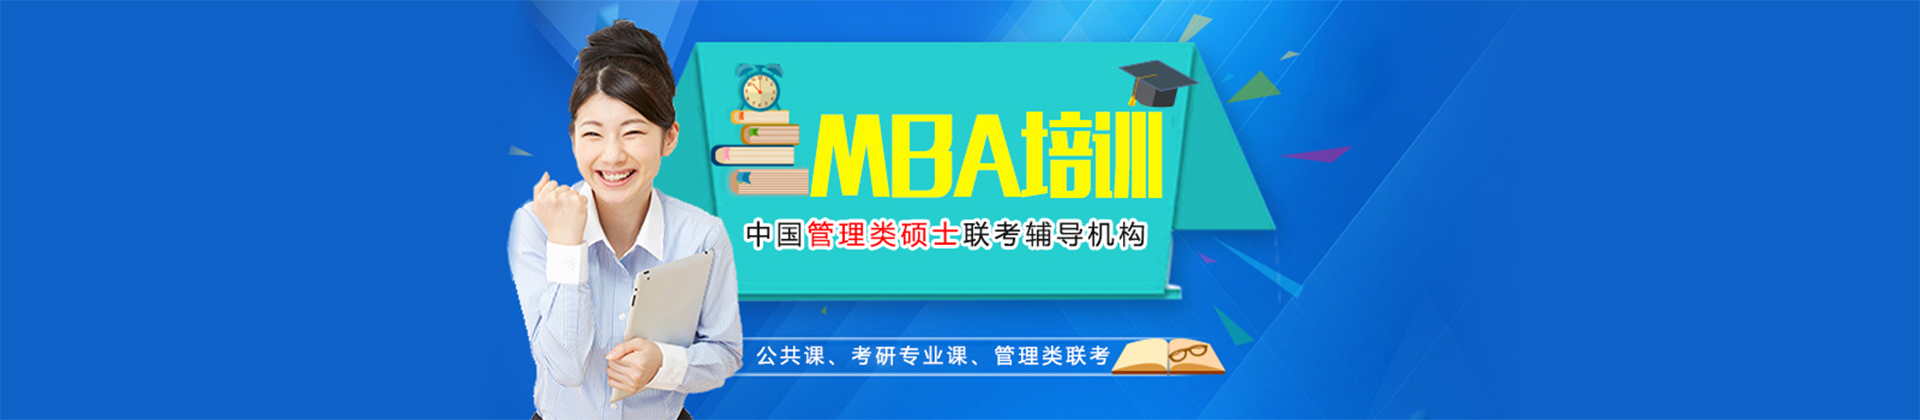 北京MBA考研培训学校